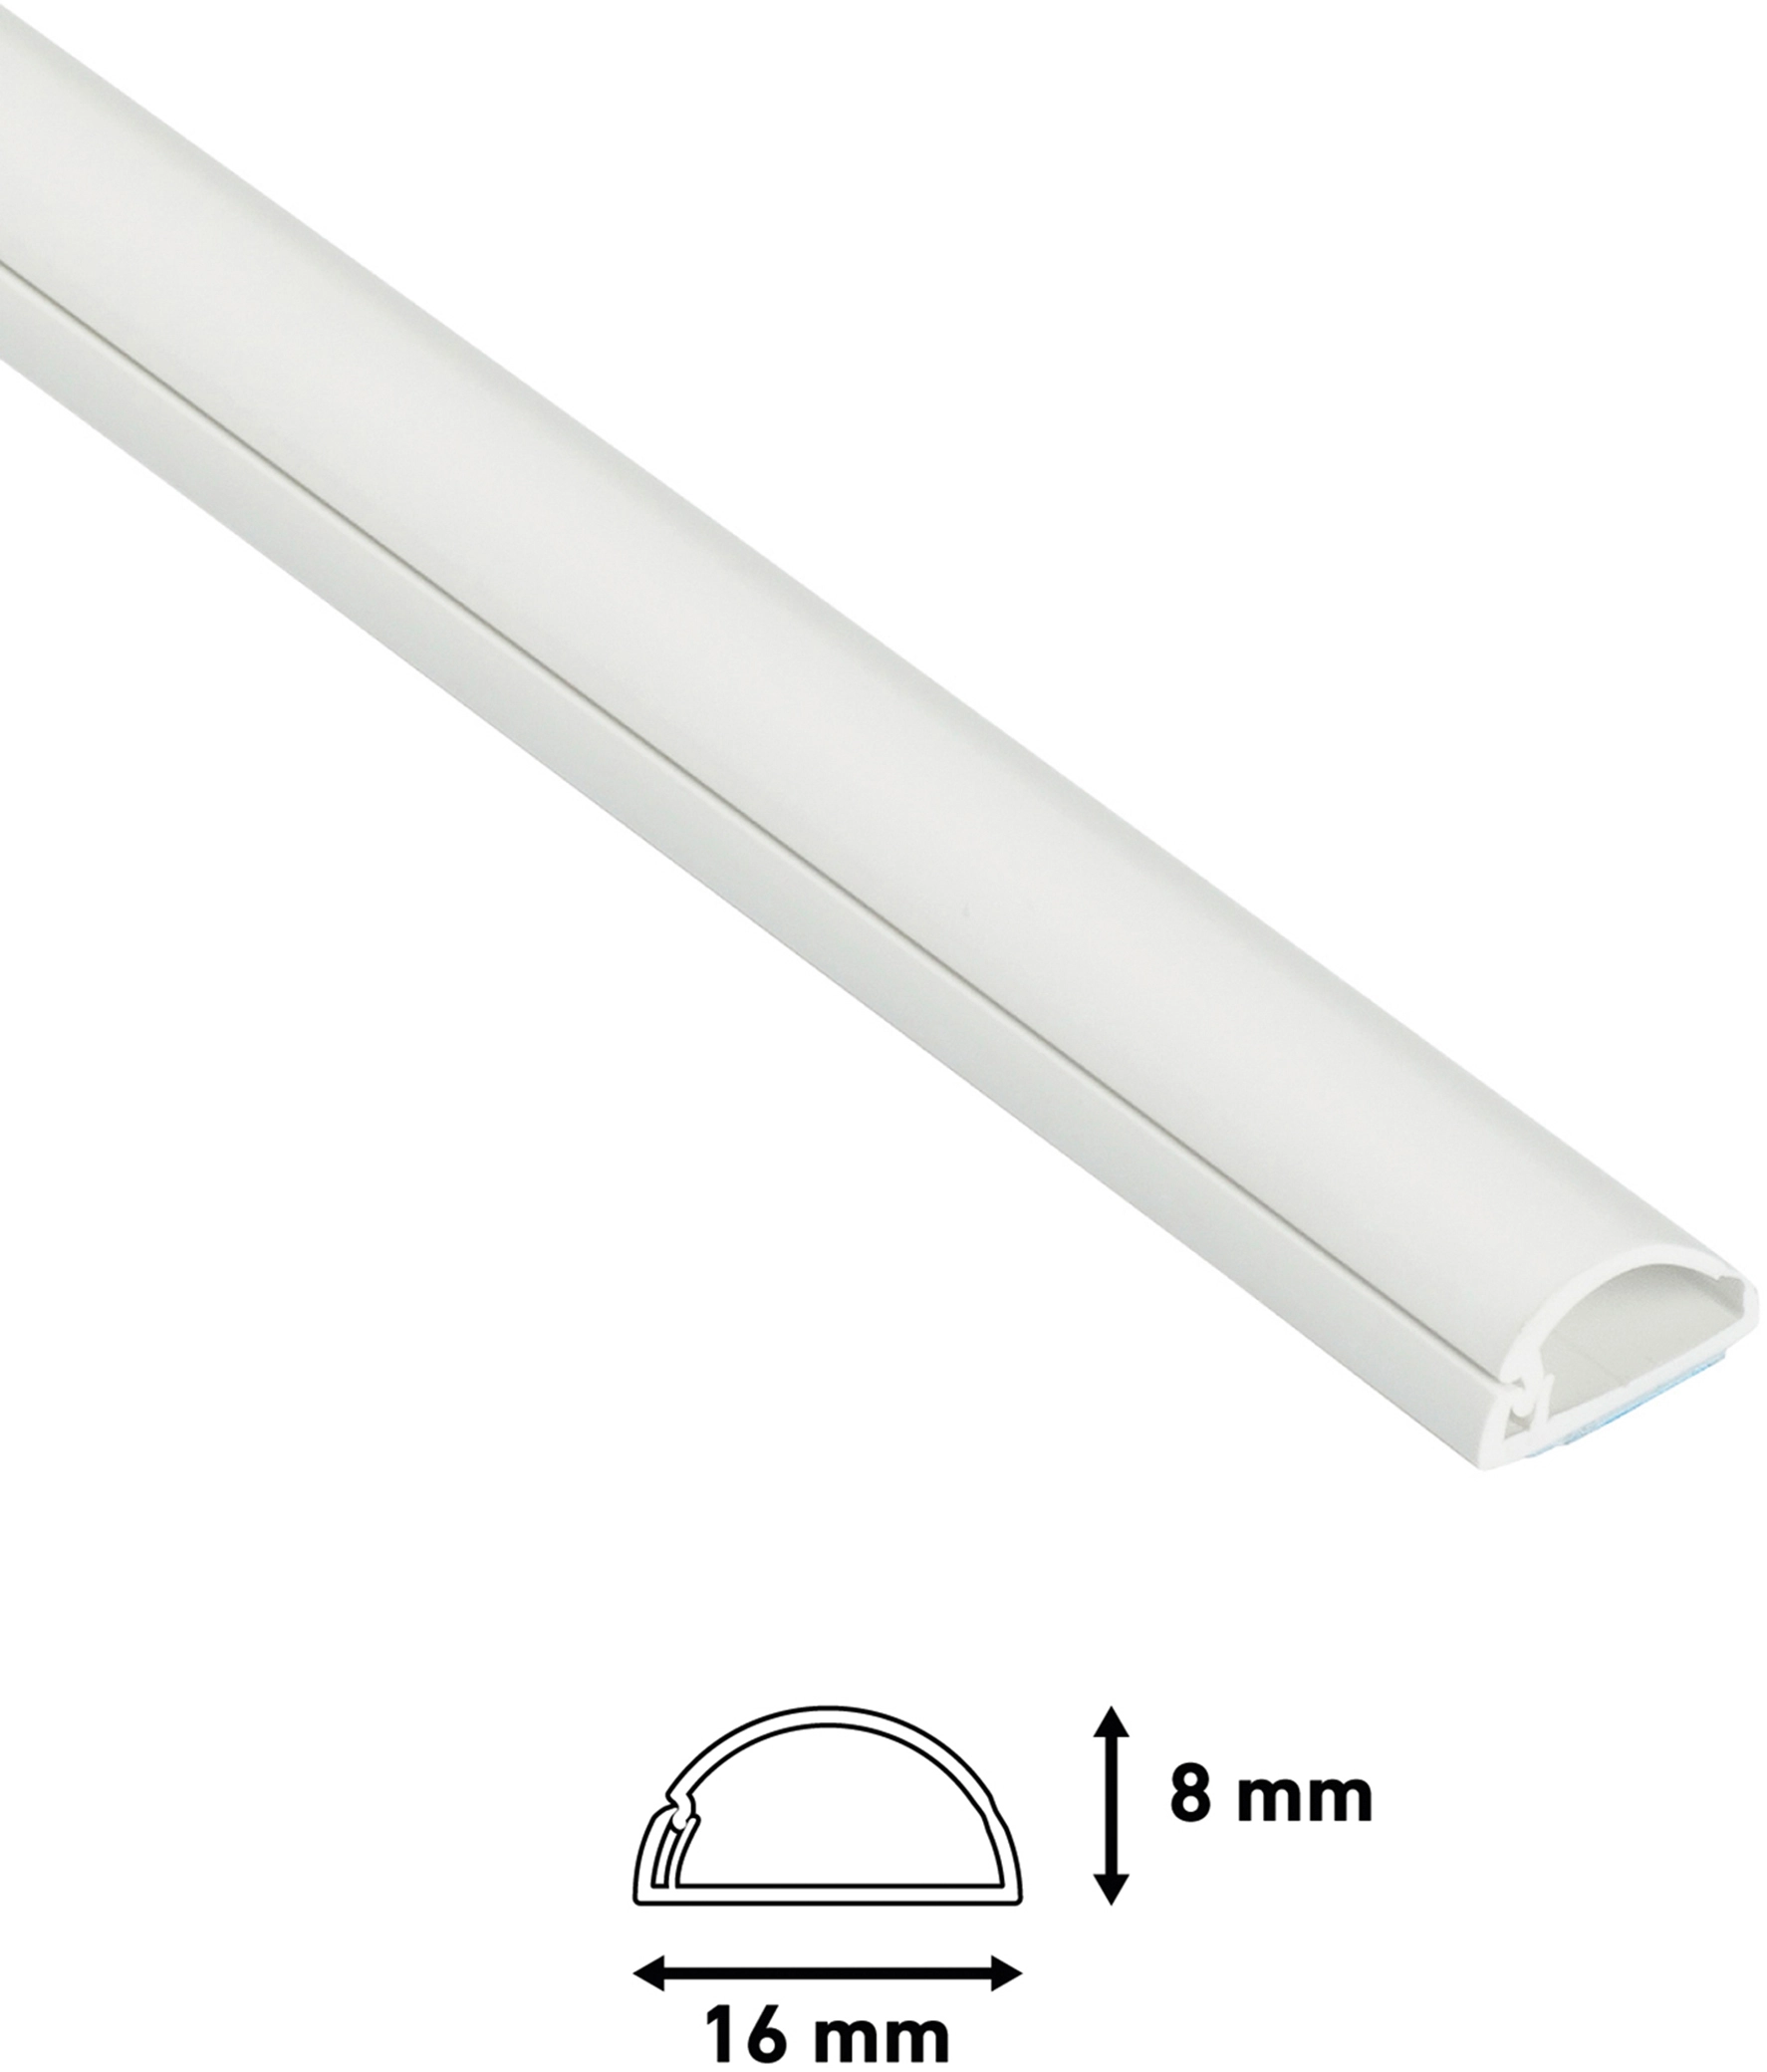 D-Line Kabelkanal 16 mm x 8 mm Weiß 2 m